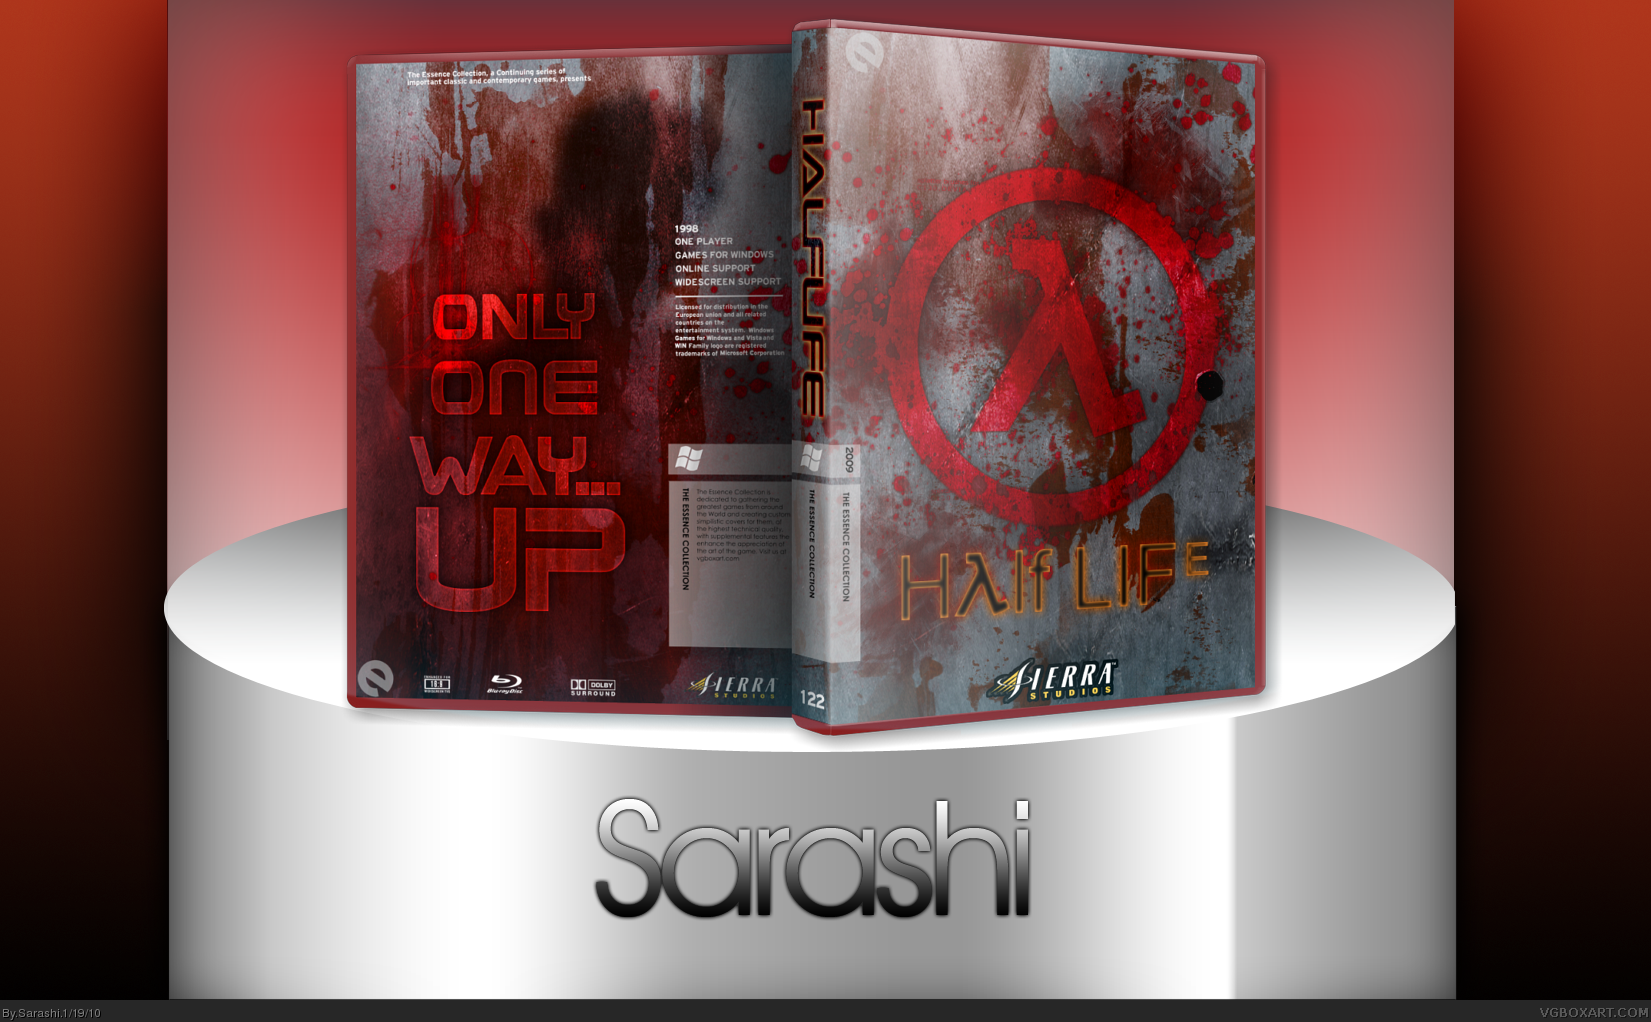 Half-Life box cover